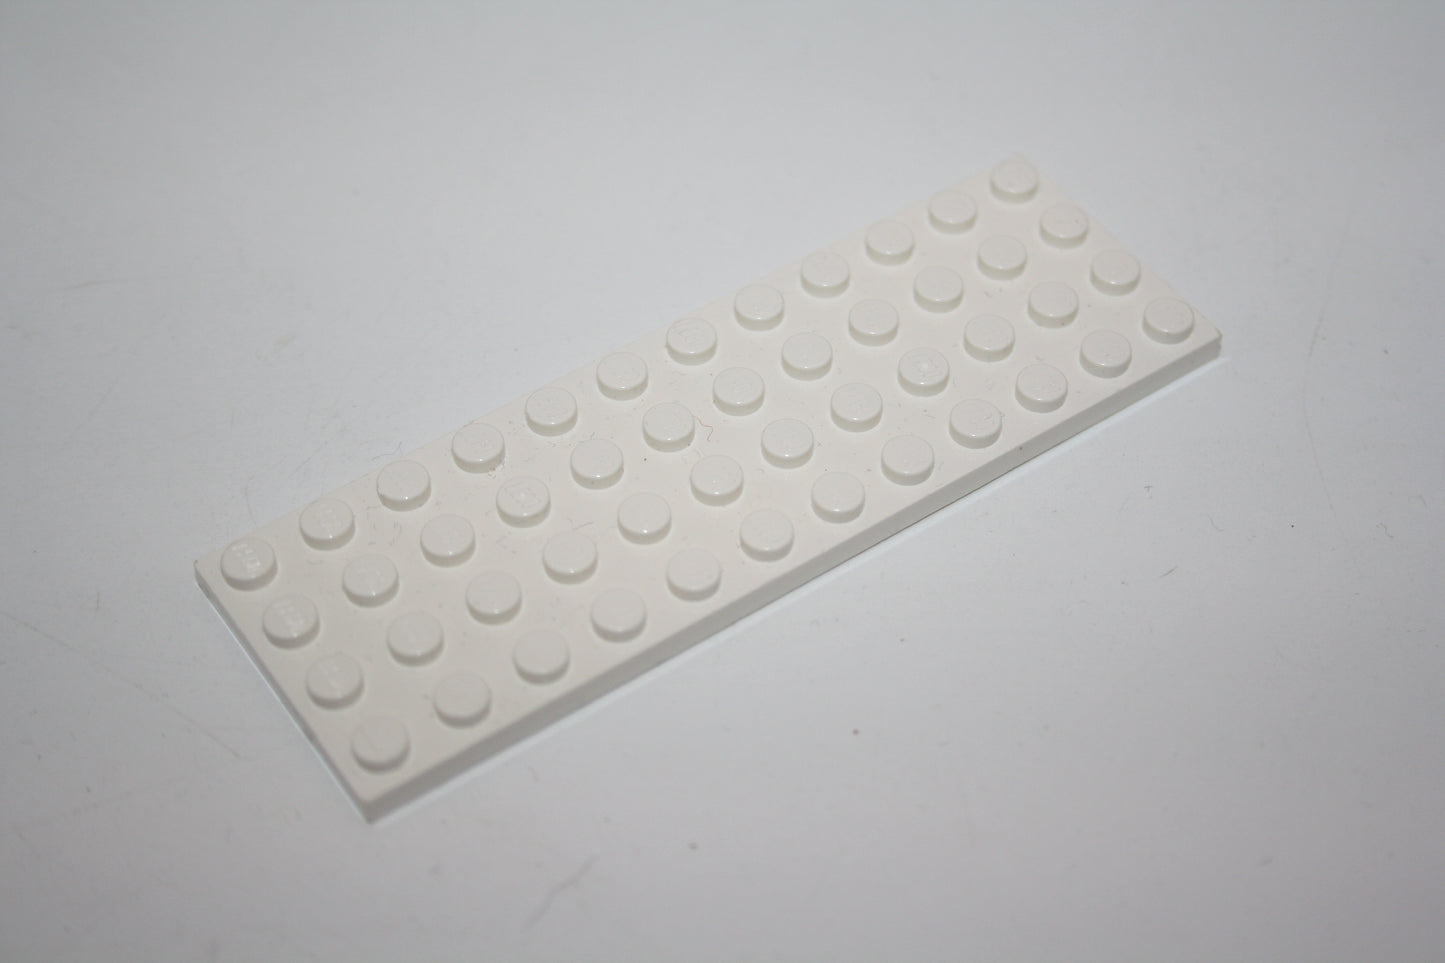 LEGO® - 4x12 Platte - 3029 - versch. Farben - Platten - Base Plate